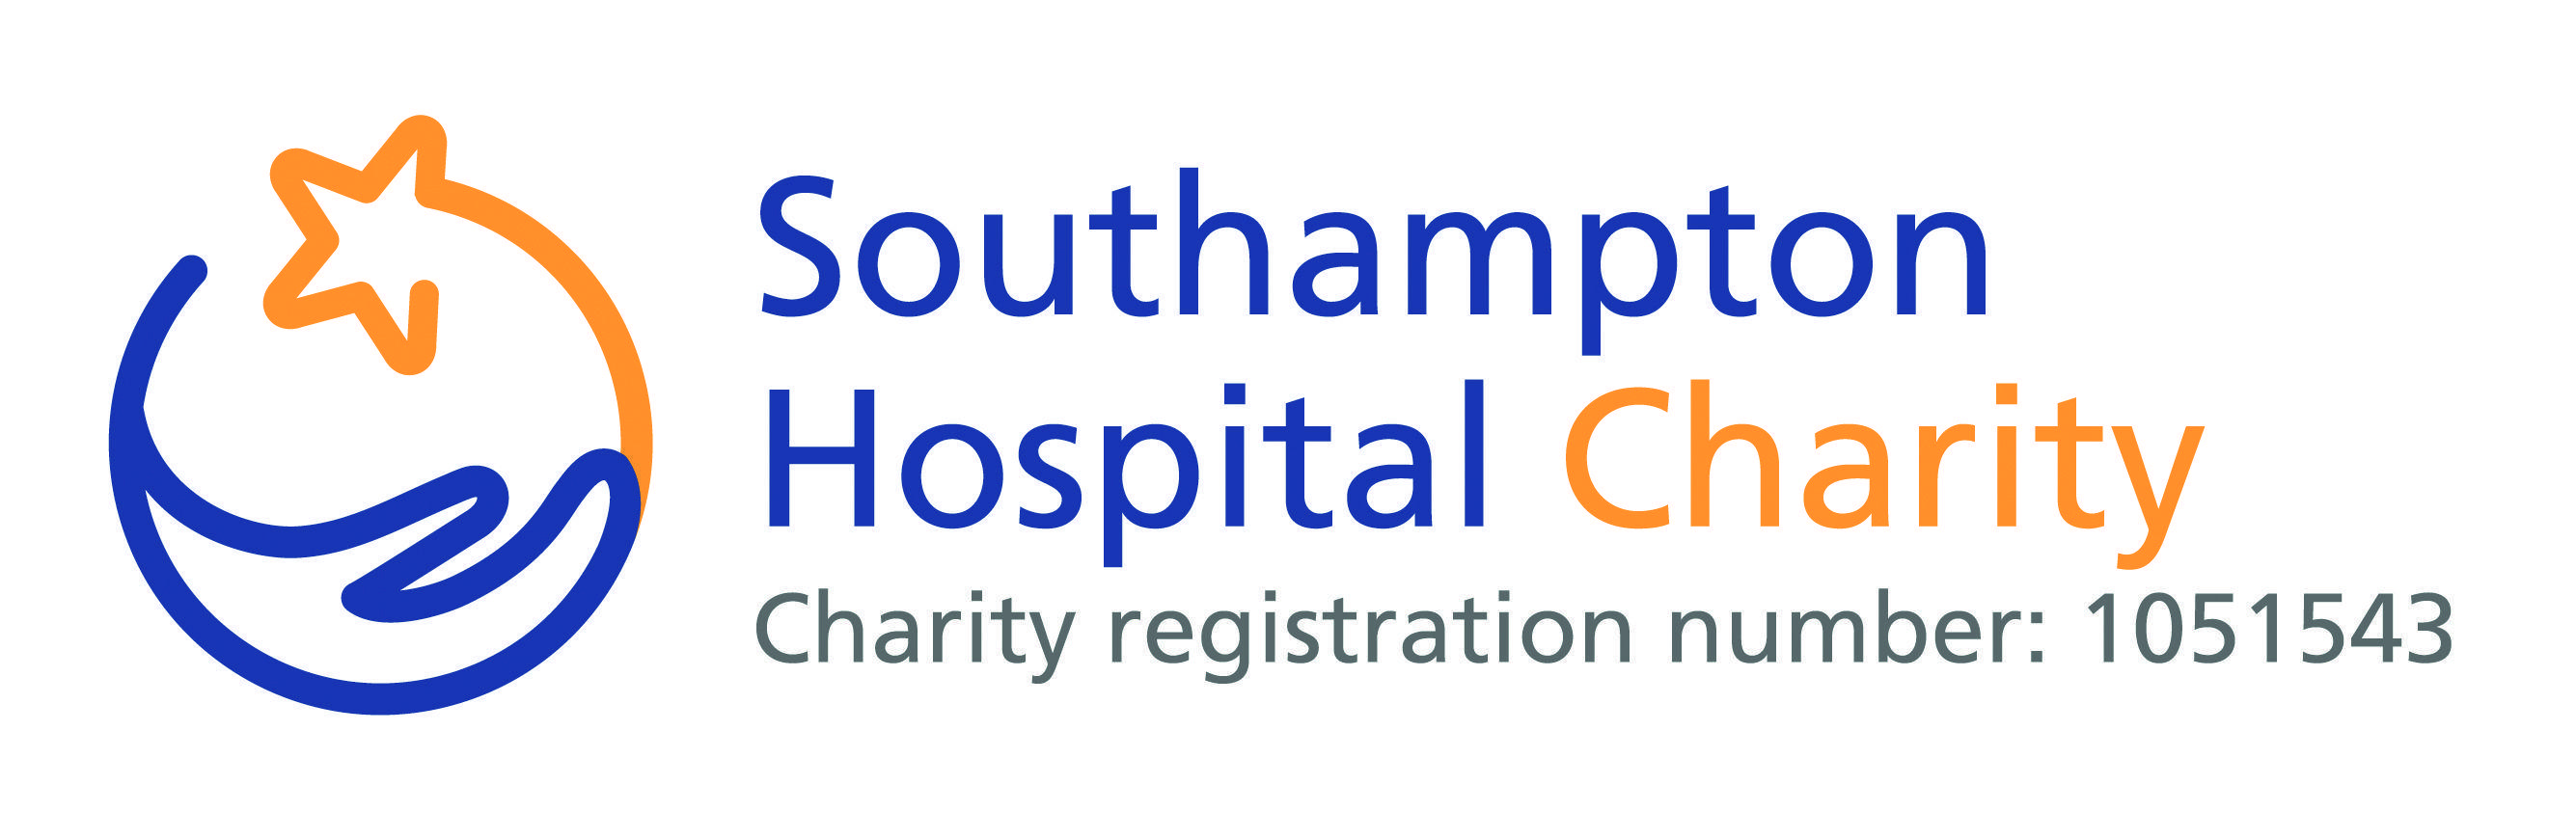 Fundraising Logo - Southampton Hospital Charity - Fundraising toolkit